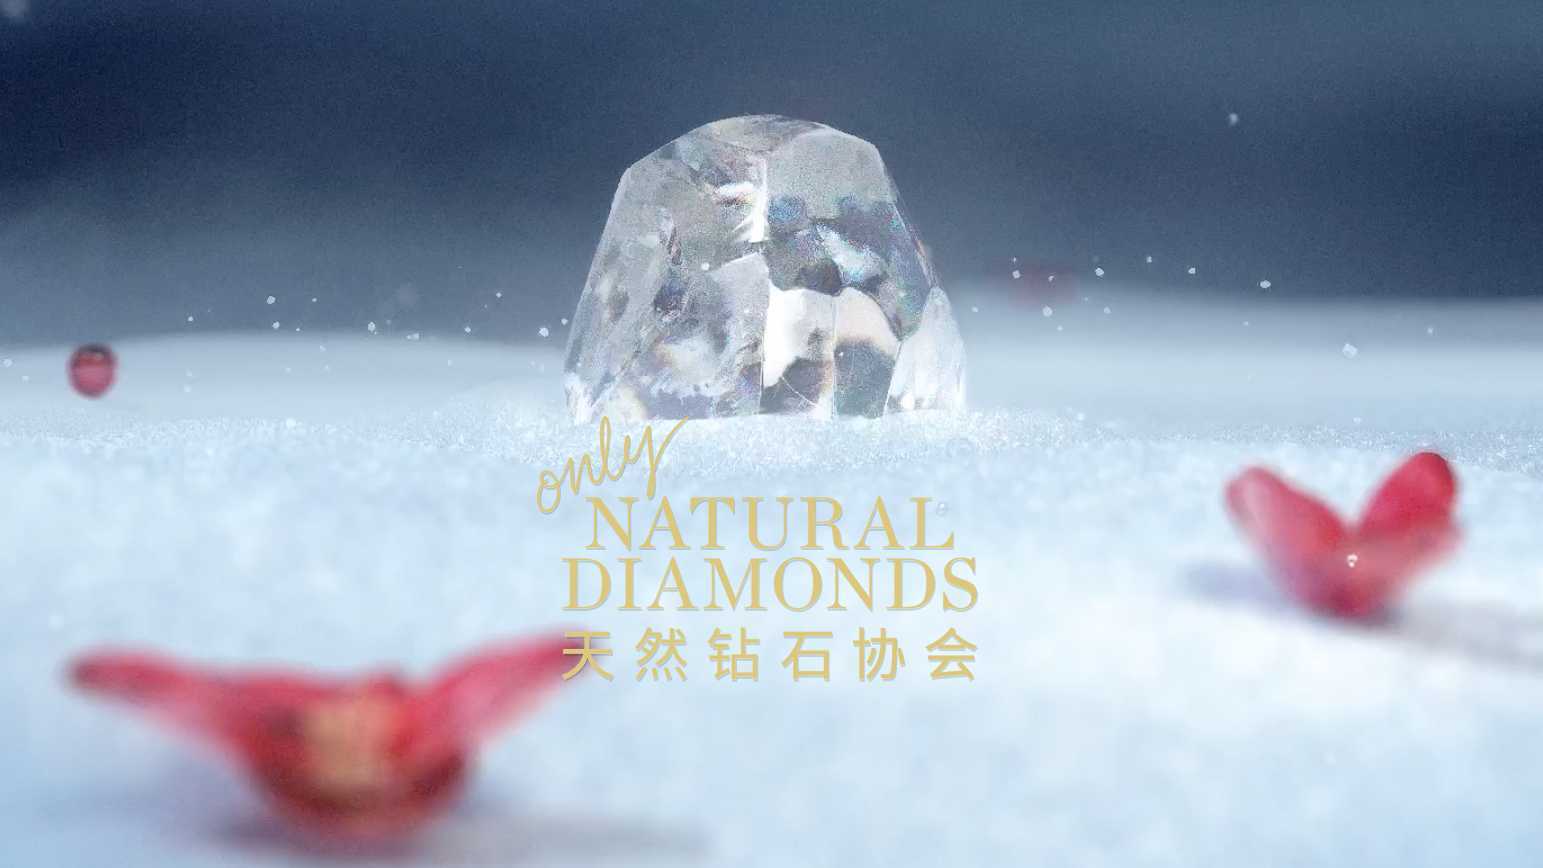 天然钻石协会「龙腾耀自然 璀璨照新年」